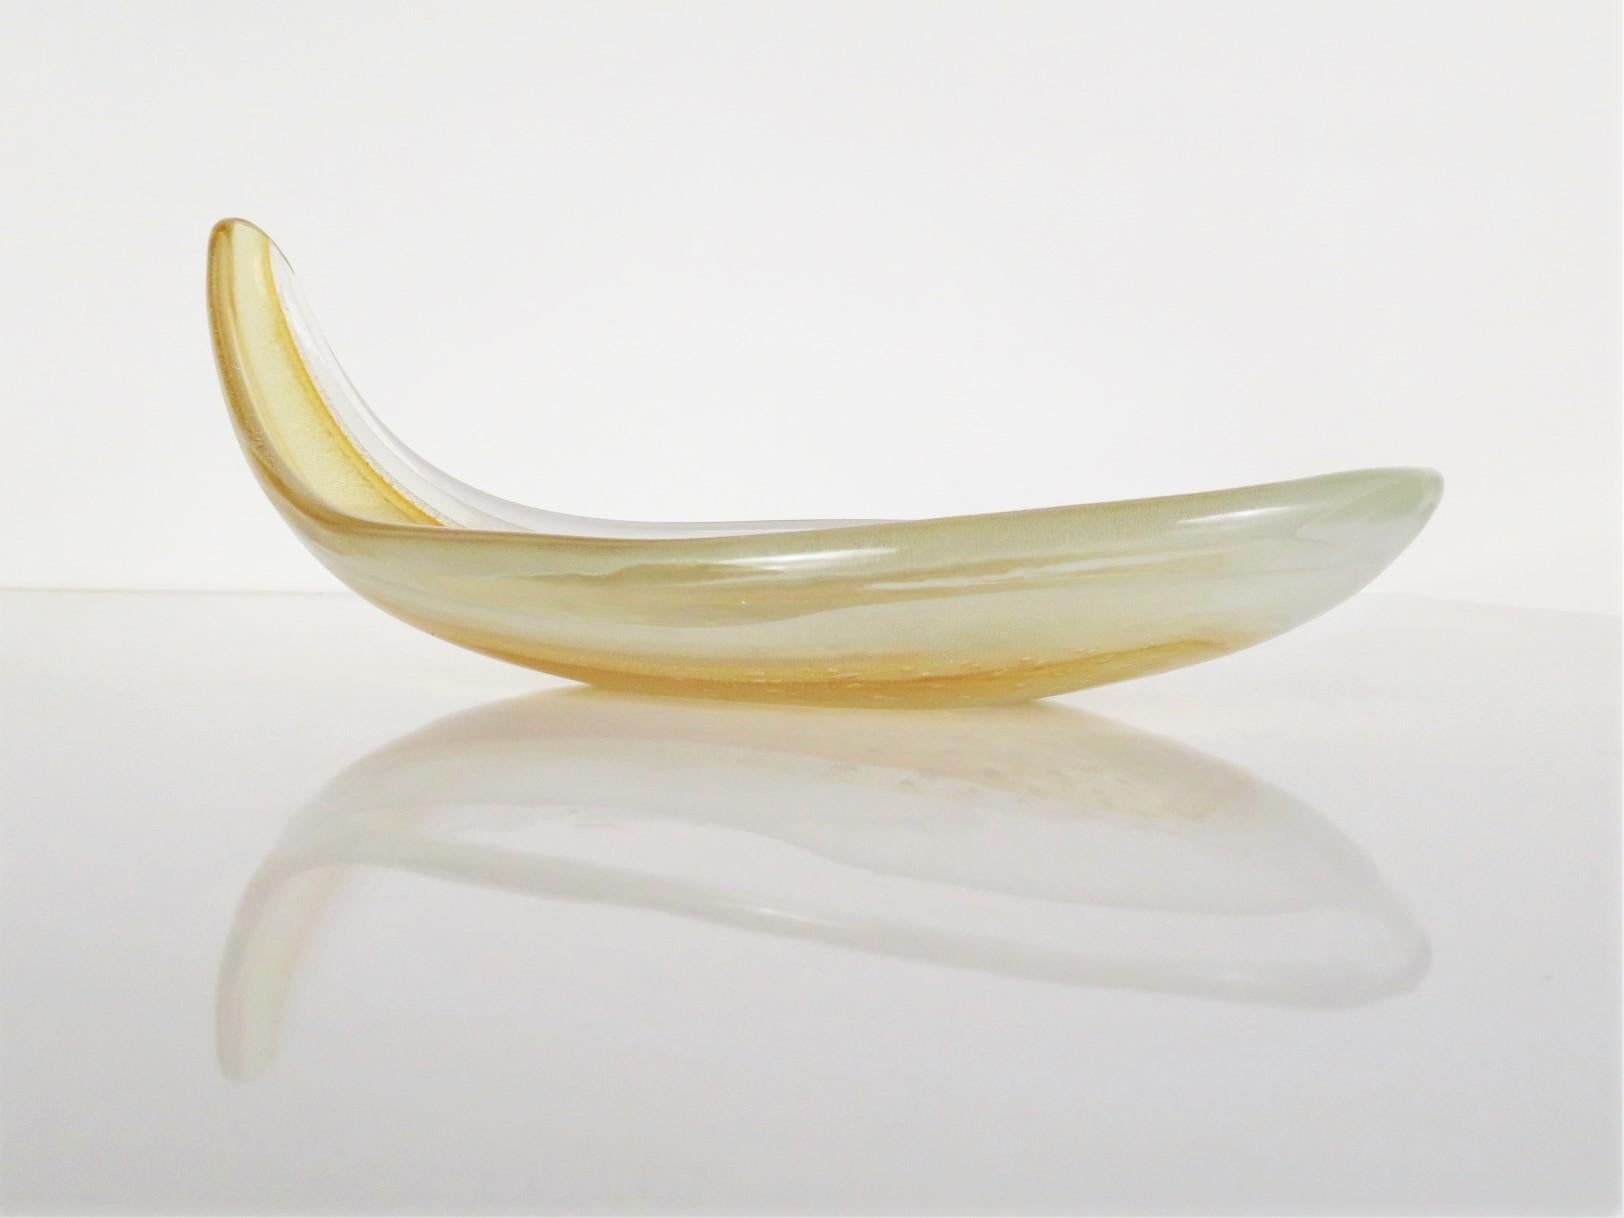 Joli bol allongé en verre de Murano, transparent avec or infusé, de Seguso, Italie. Elle rappelle une courge d'été très élégante avec une poignée.

Mesures : 12 pouces de large x 5 3/4 pouces de large x 5 pouces de haut

Très bon état. La lèvre